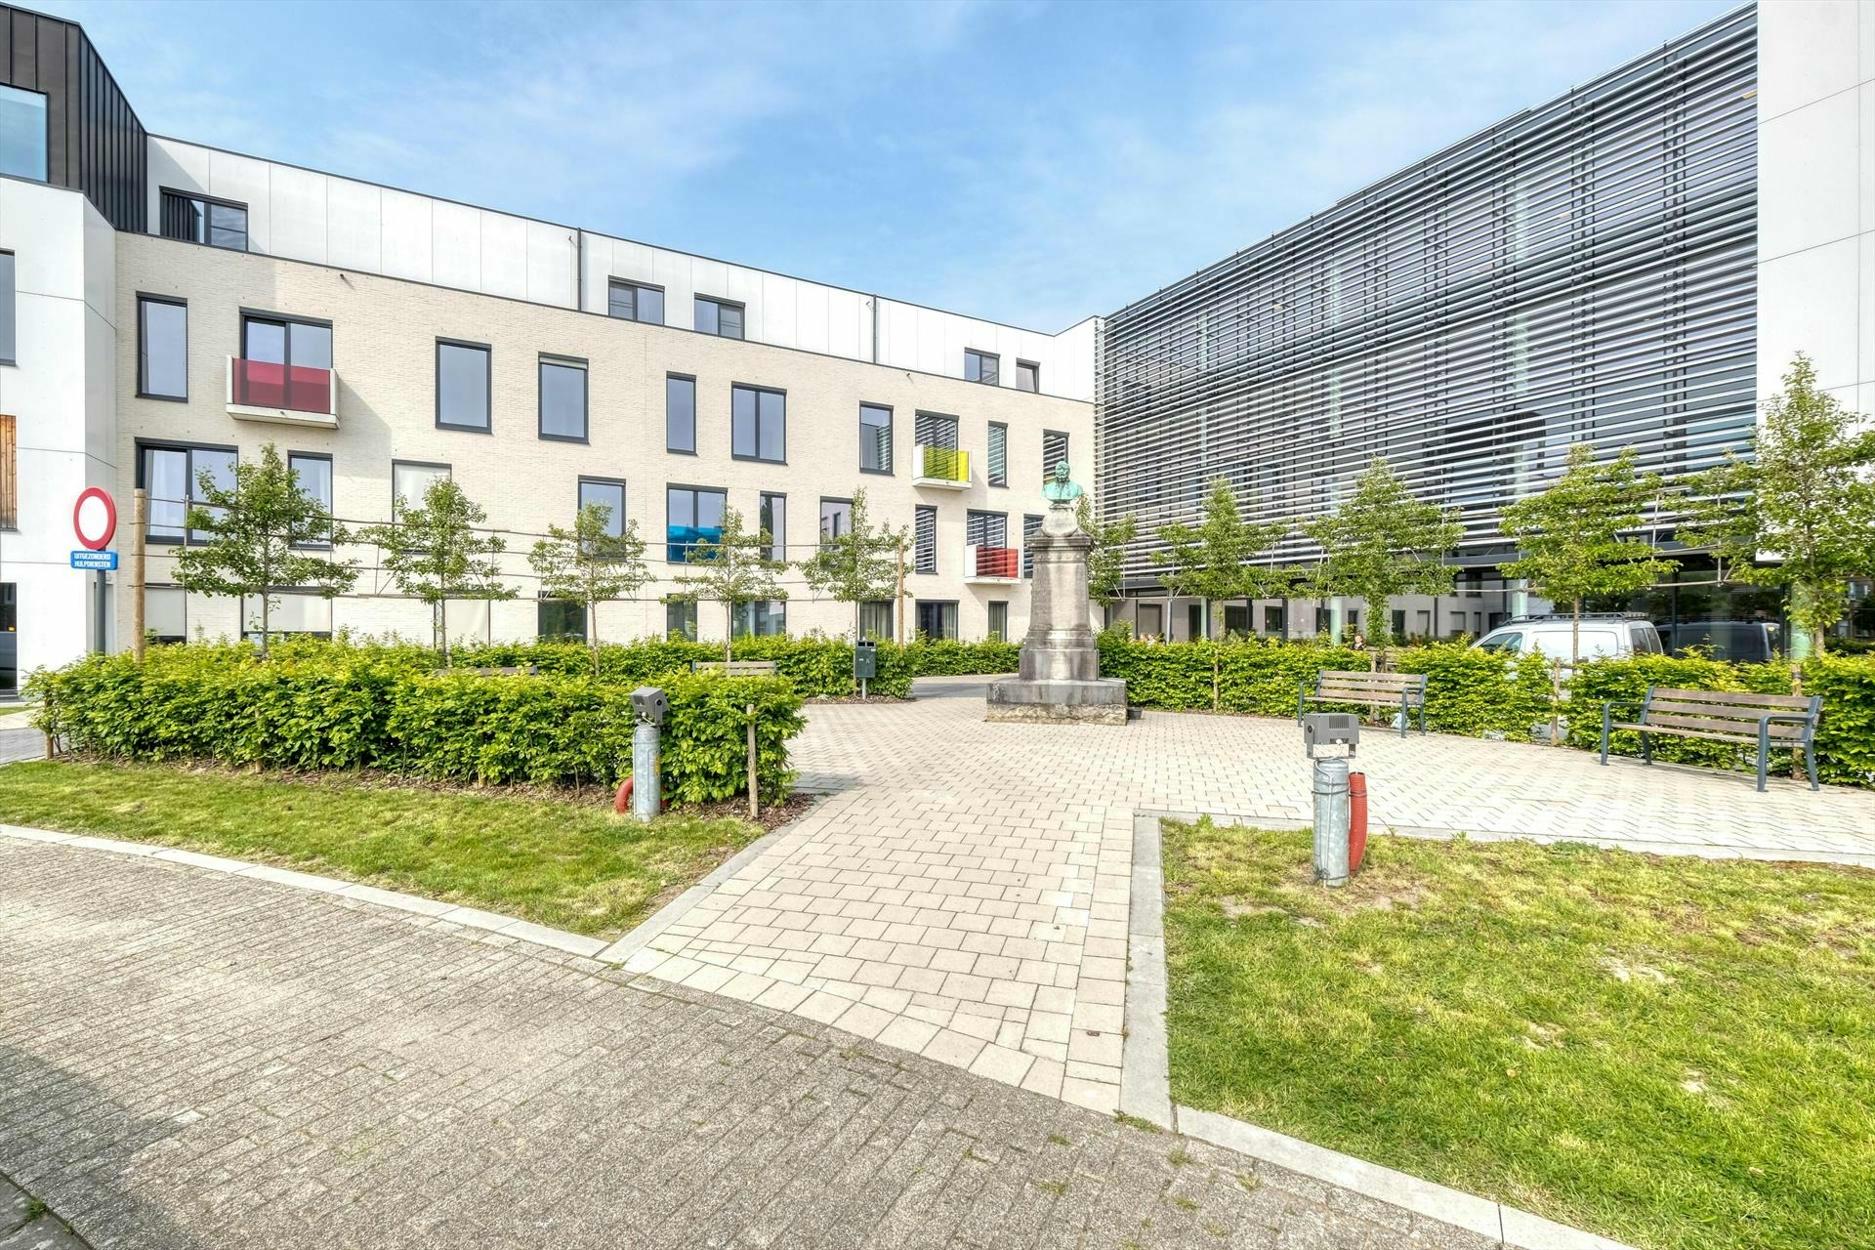 Gunstig gelegen assistentiewoning met een bewoonbare oppervlakte van 64 m² te Tienen